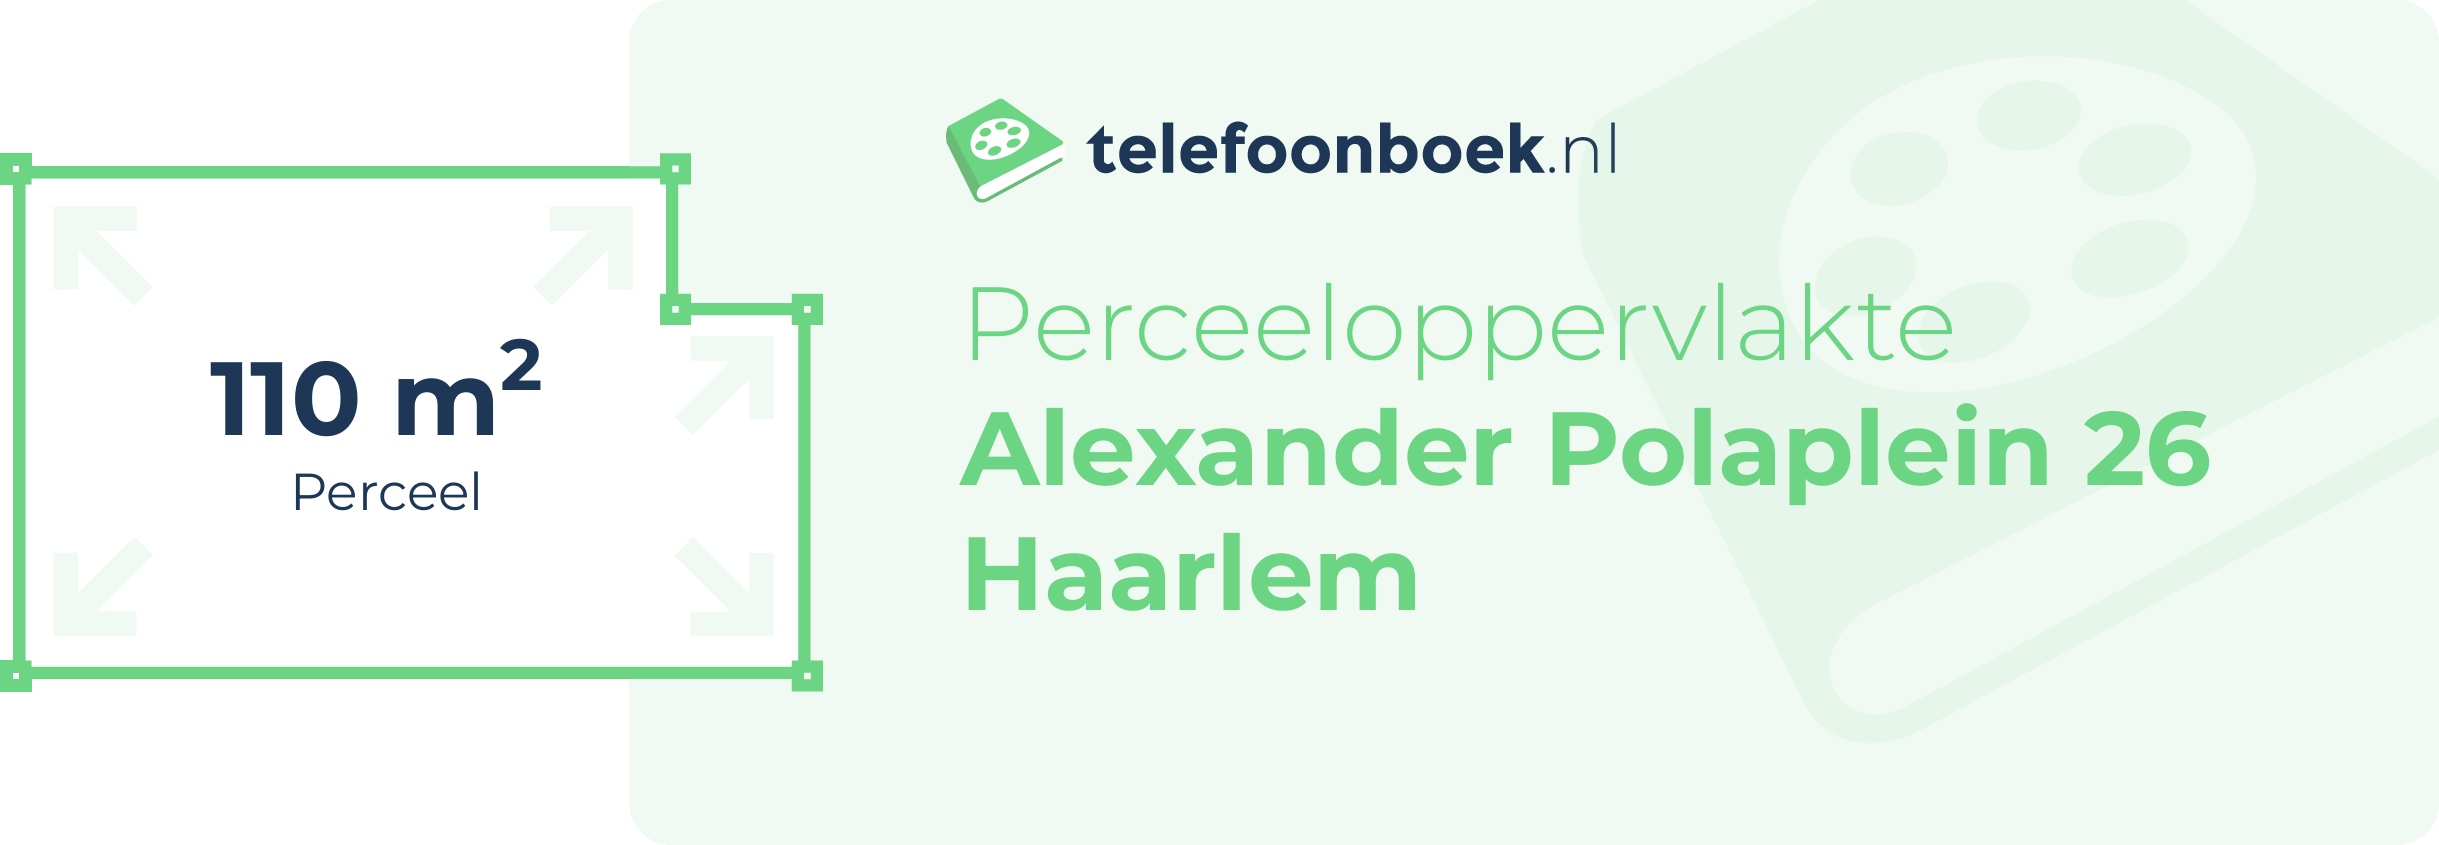 Perceeloppervlakte Alexander Polaplein 26 Haarlem